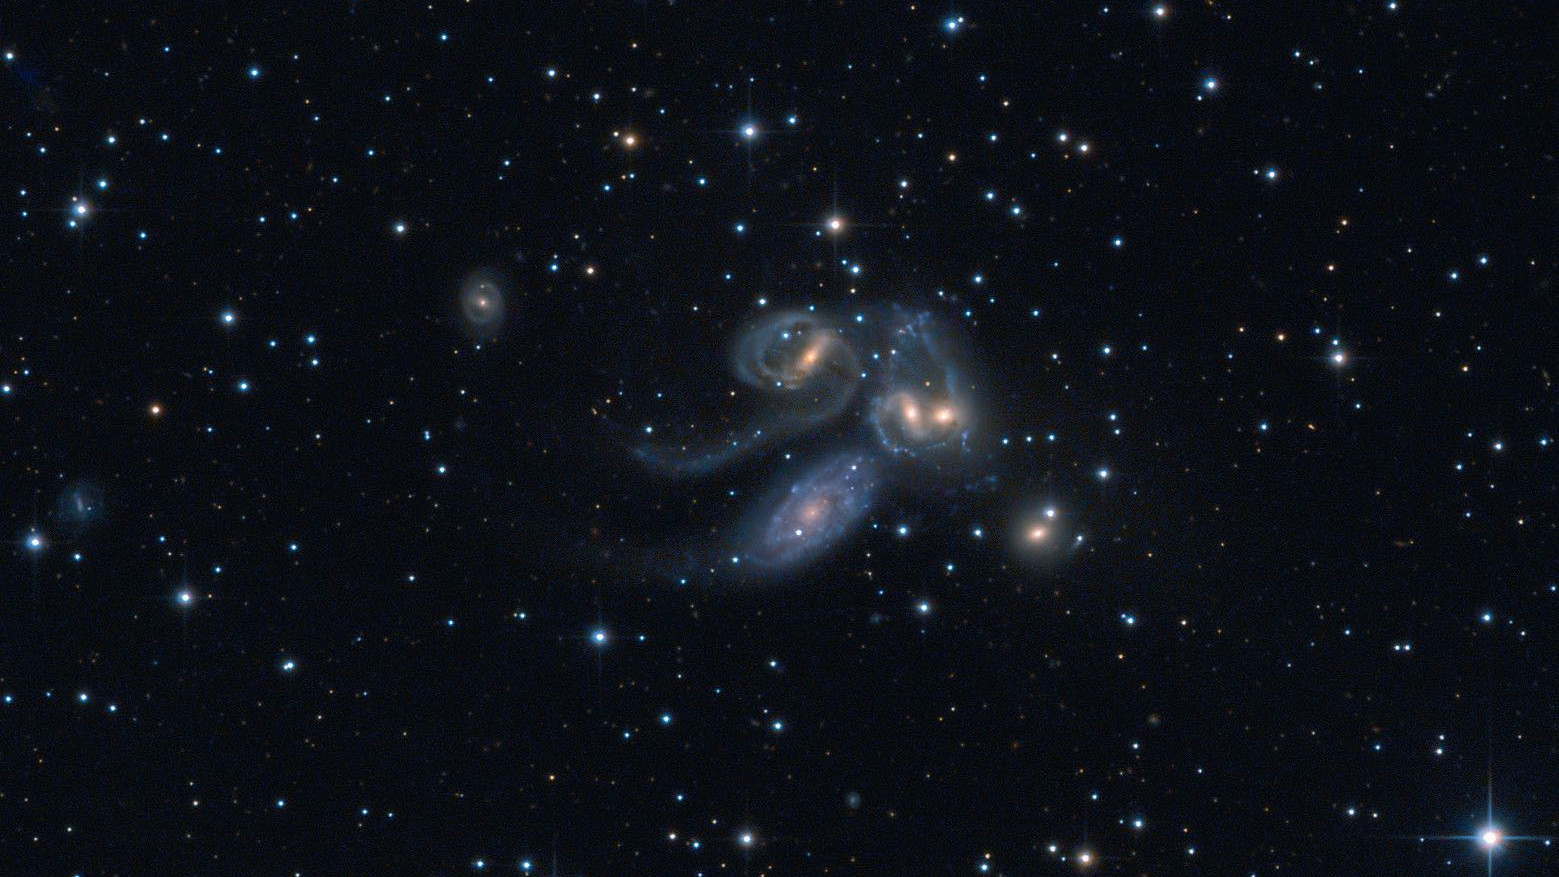 Stephans Quintett: NGC 7320C (oben links), NGC 7319, NGC 7318B und NGC 7318A und
NGC 7217 (unten rechts). NGC 7320 (unten links) gehört nicht zu der Gruppe. Wolfgang Promper